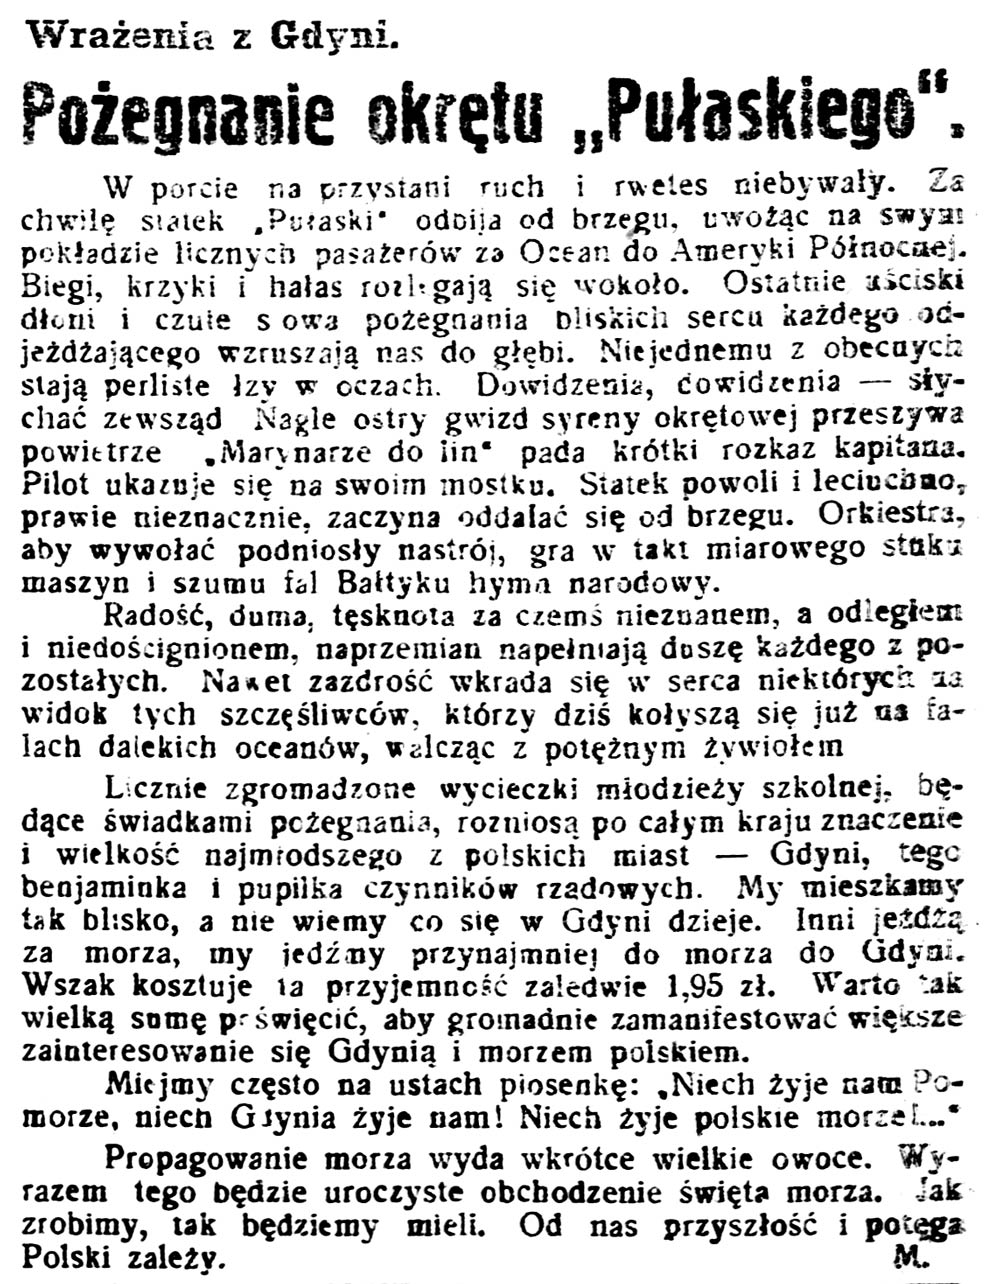 Pożegnanie okrętu "Pułaskiego". Wrażenia z Gdyni / M. // Gazeta kartuska. - 1933, nr 74, s. 3